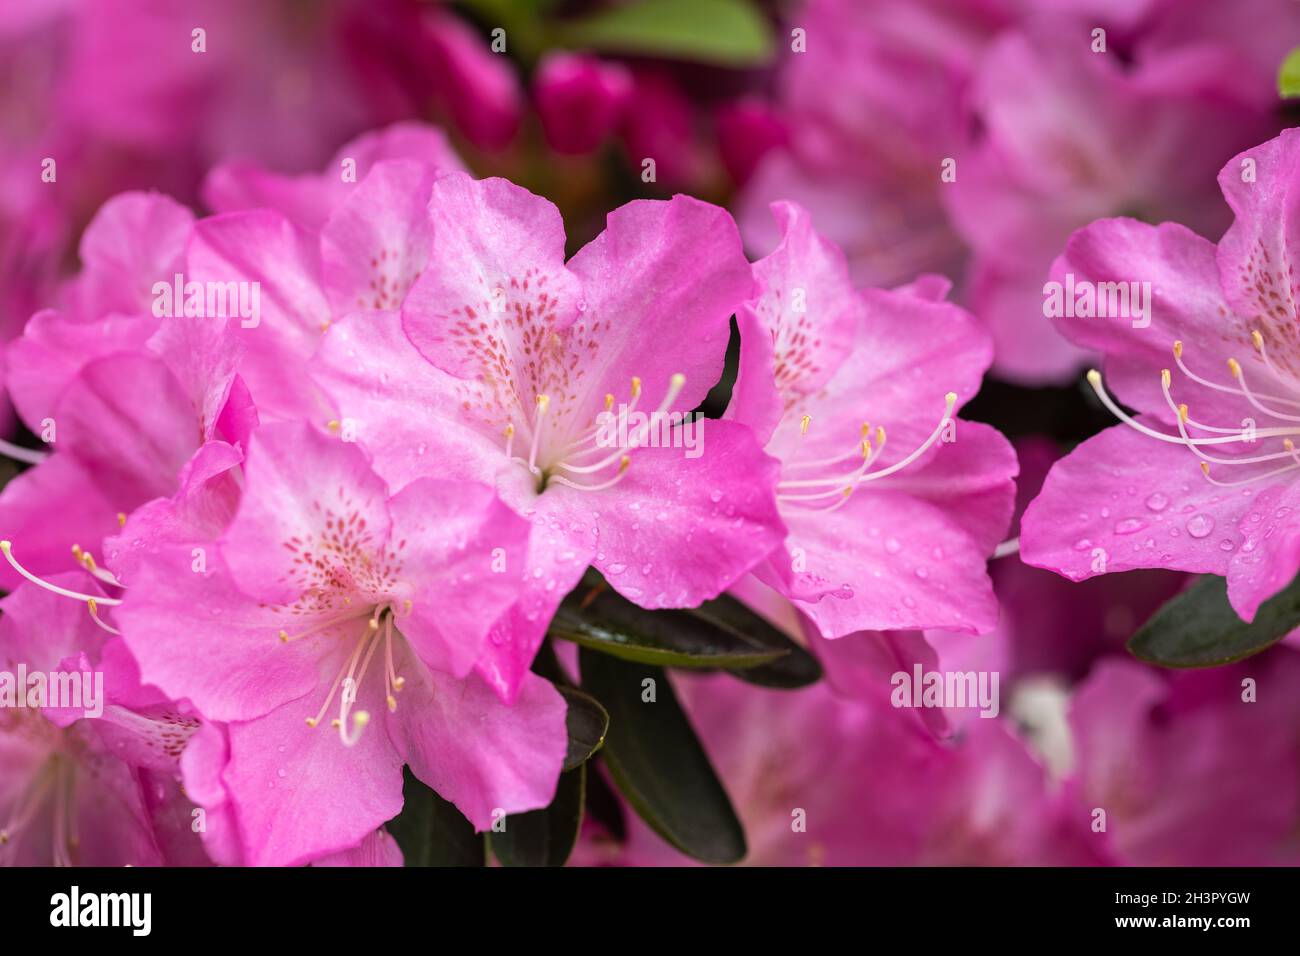 Azalea flowers in bloom Stock Photo